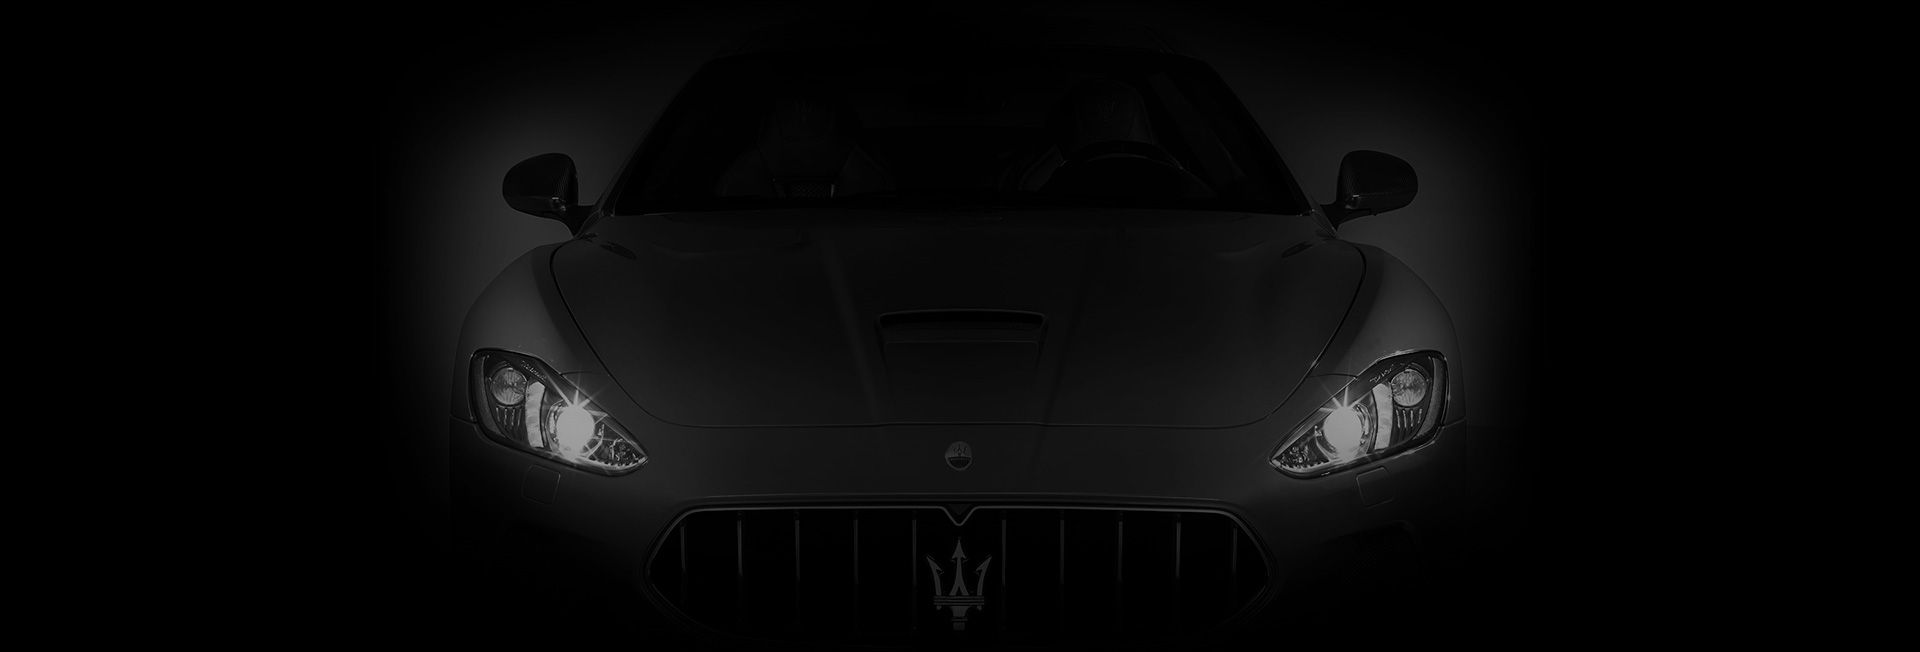 New_2018-01-18_Maserati_Visual_Web